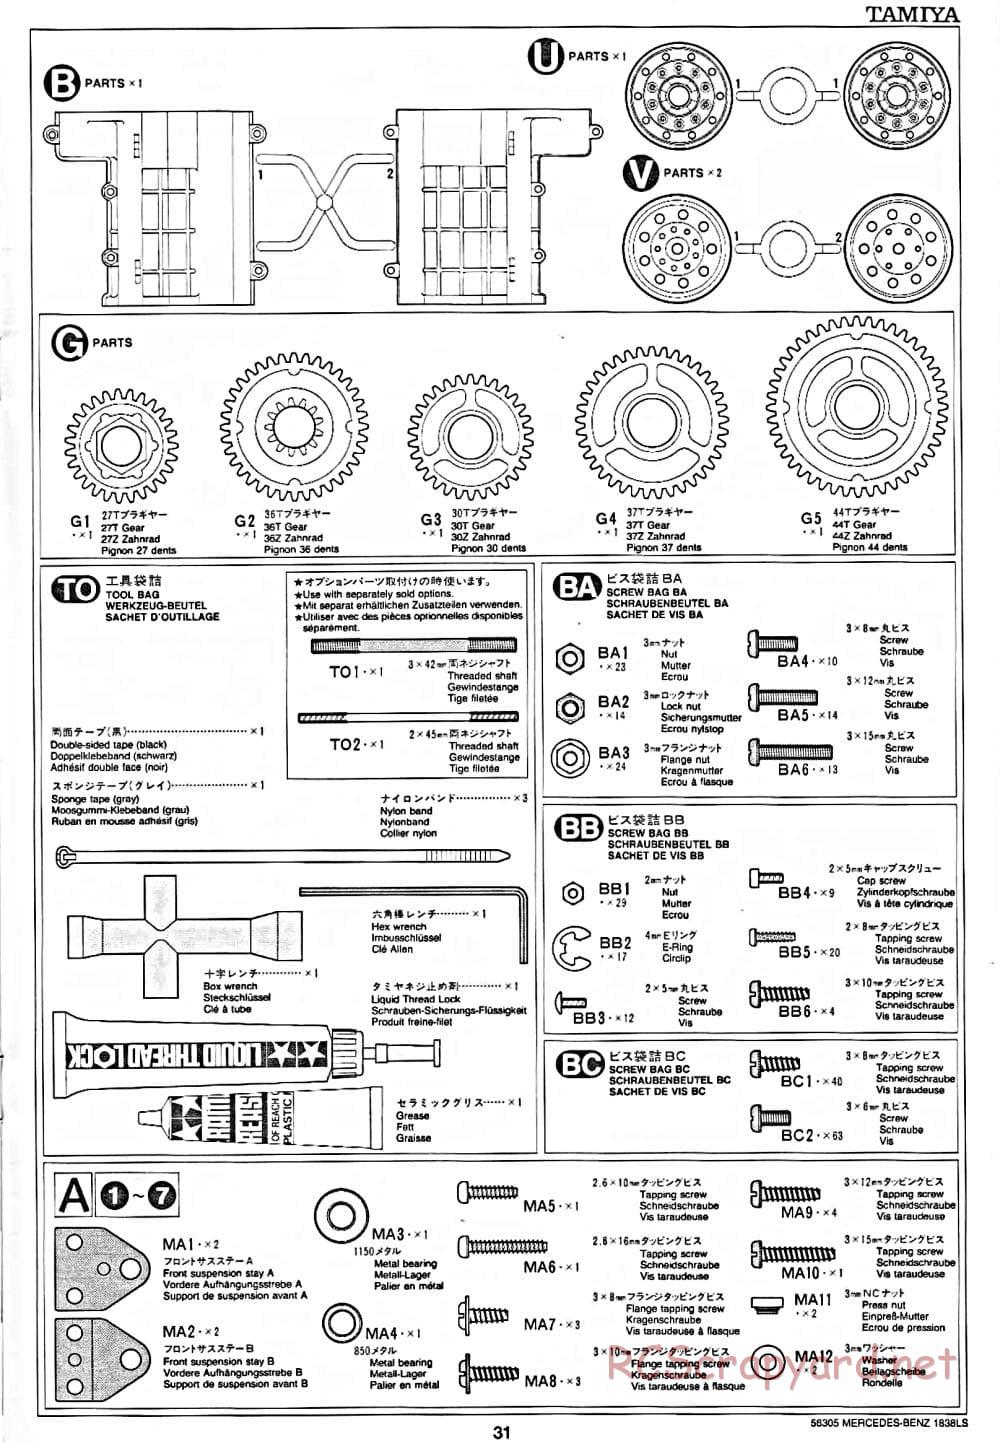 Tamiya - Mercedes-Benz 1838LS - Manual - Page 31